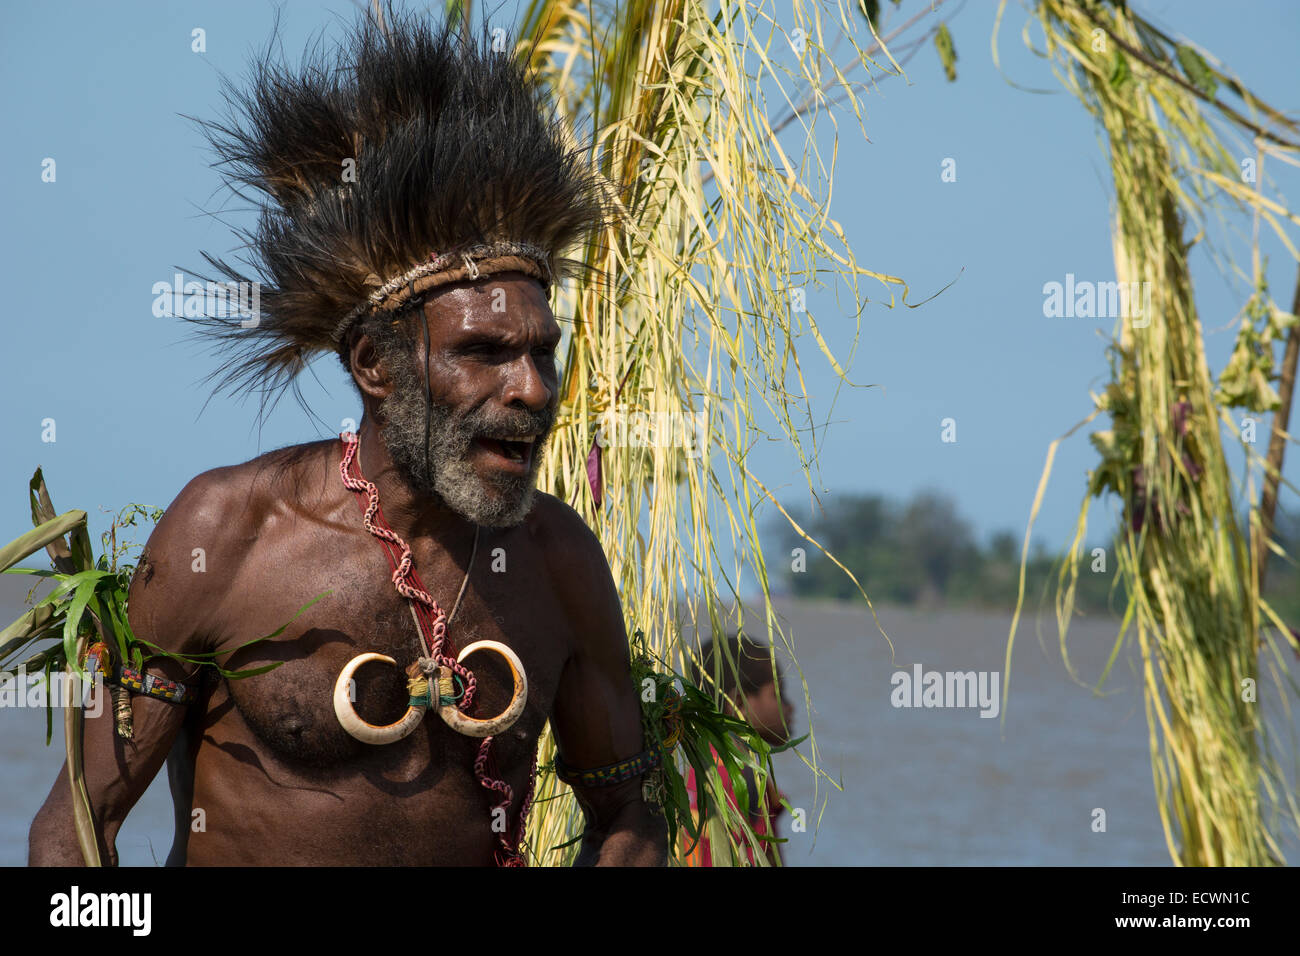 Melanesien, Papua-Neu-Guinea, Sepik River Gebiet, Dorf von Kopar. Typische Sing-Sing willkommen Tanz. Stockfoto